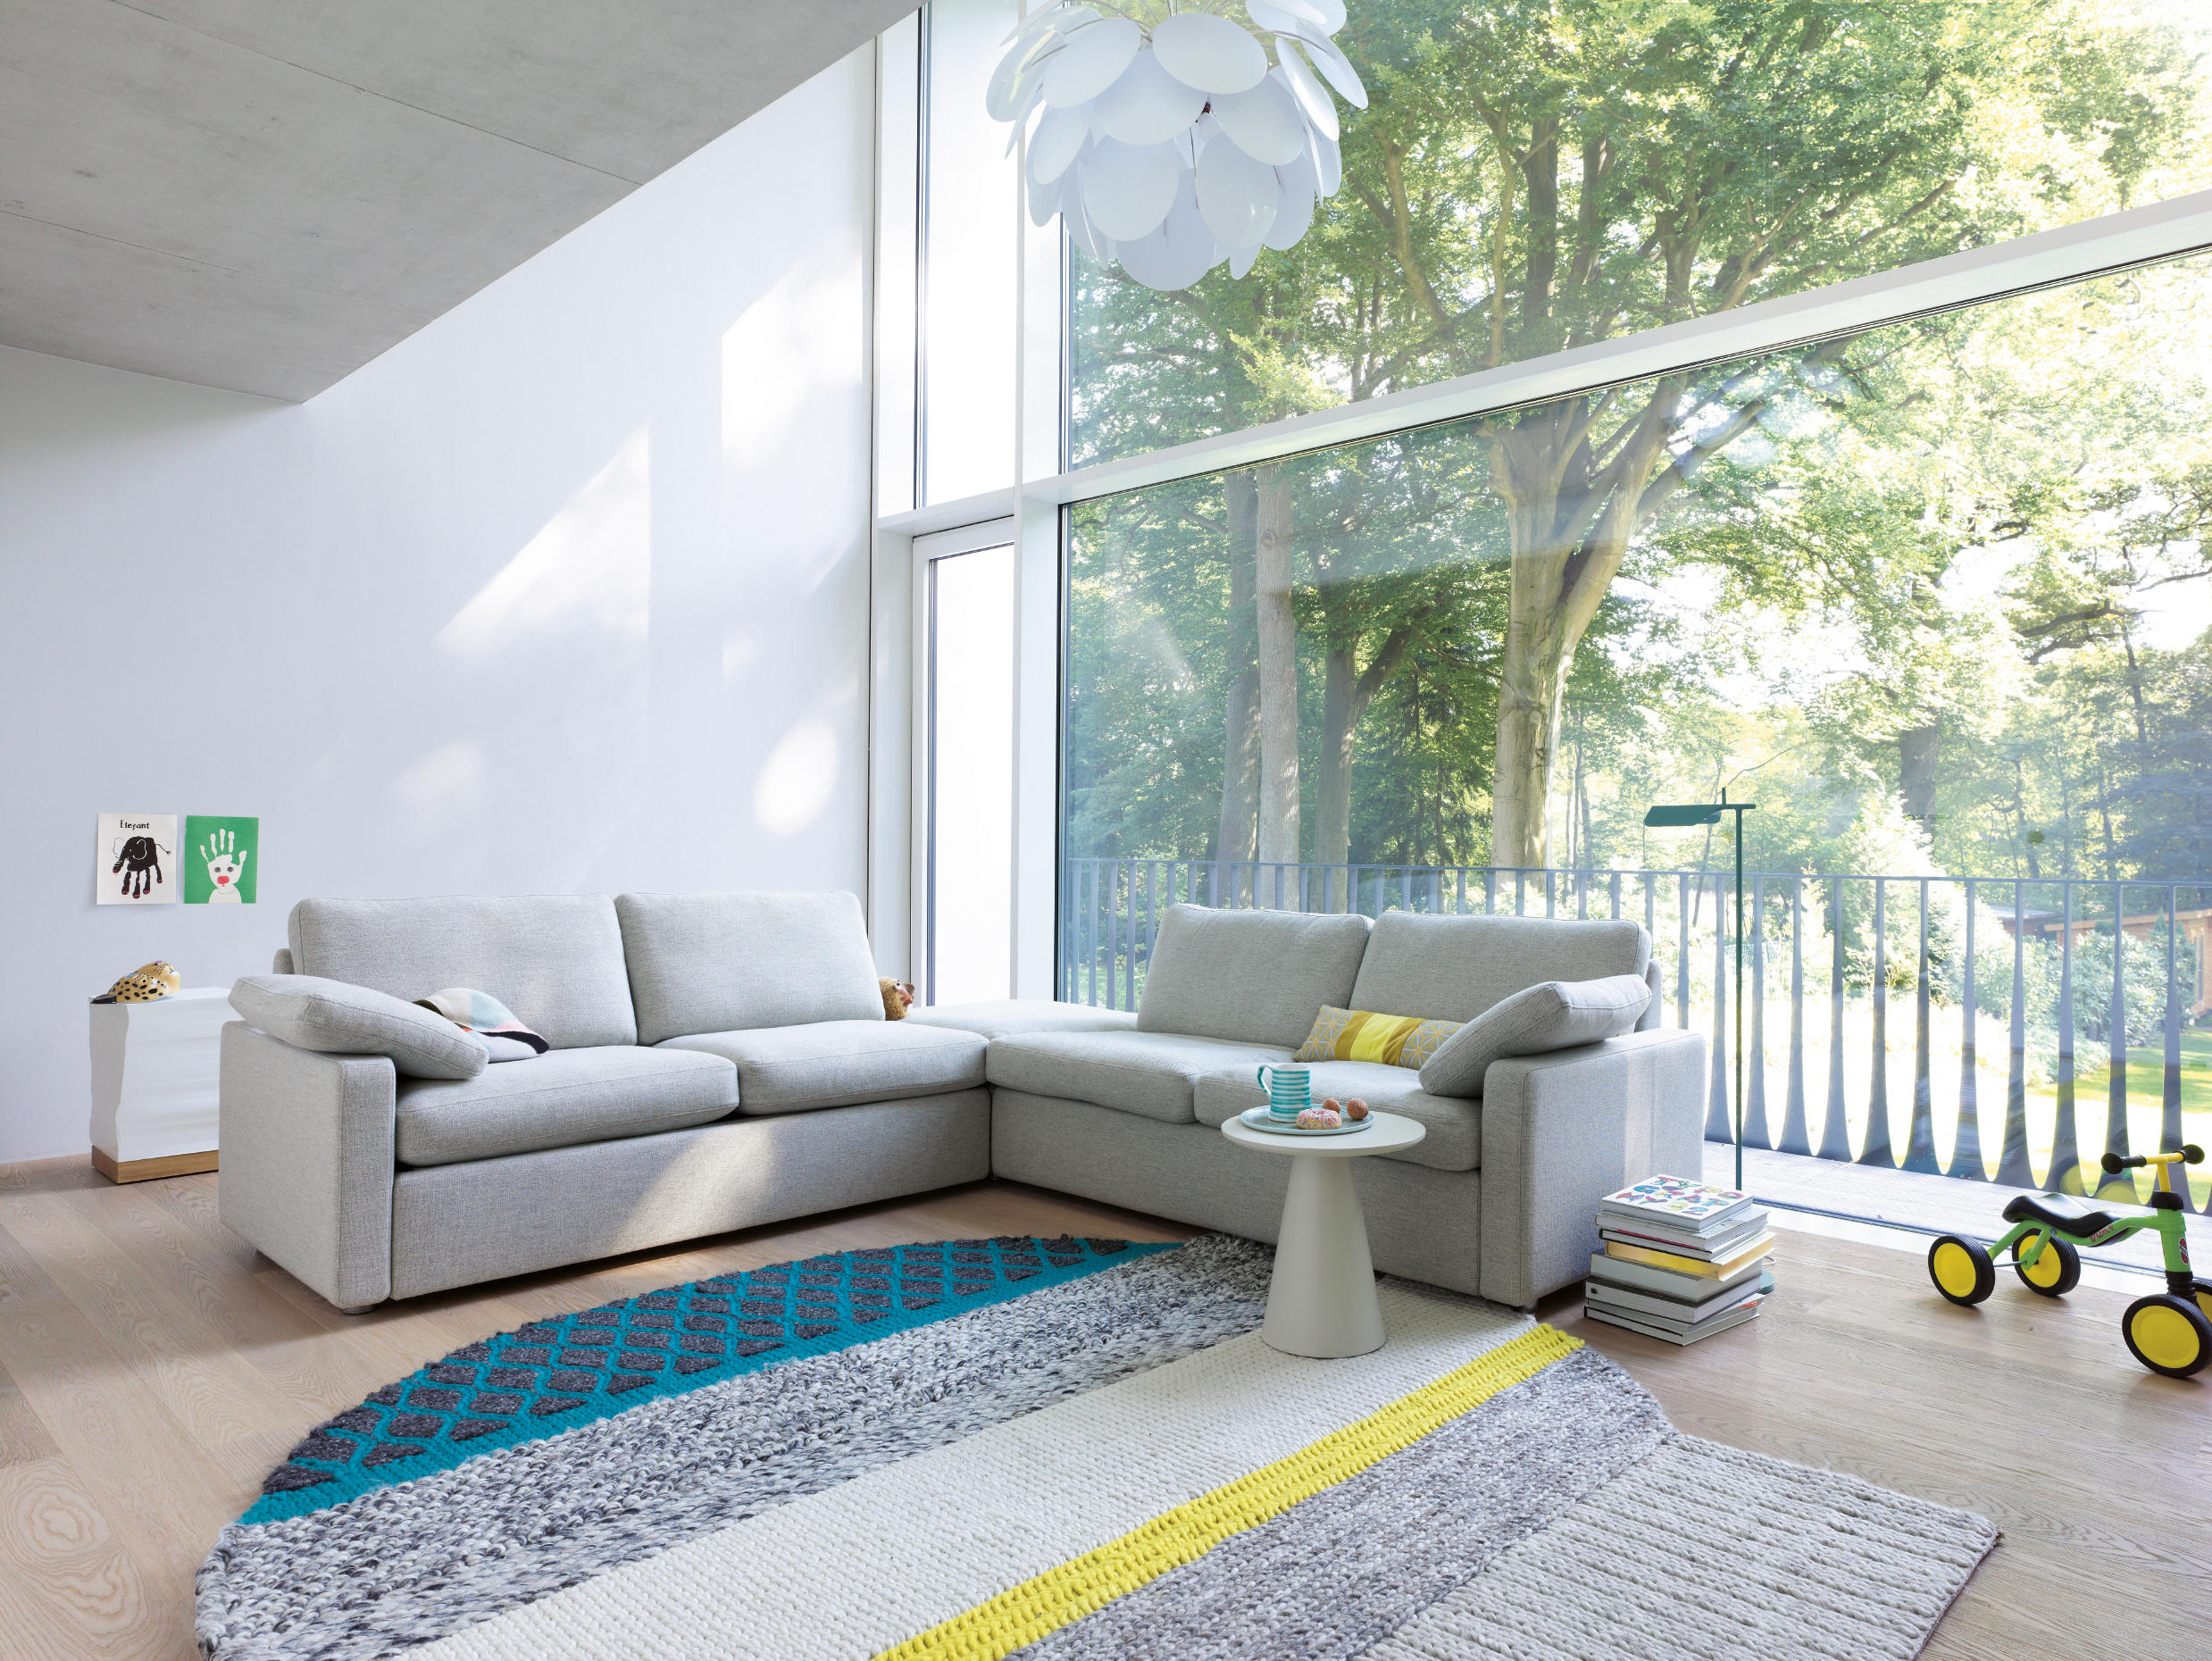 Bed designer Sofa & | furniture Architonic Conseta